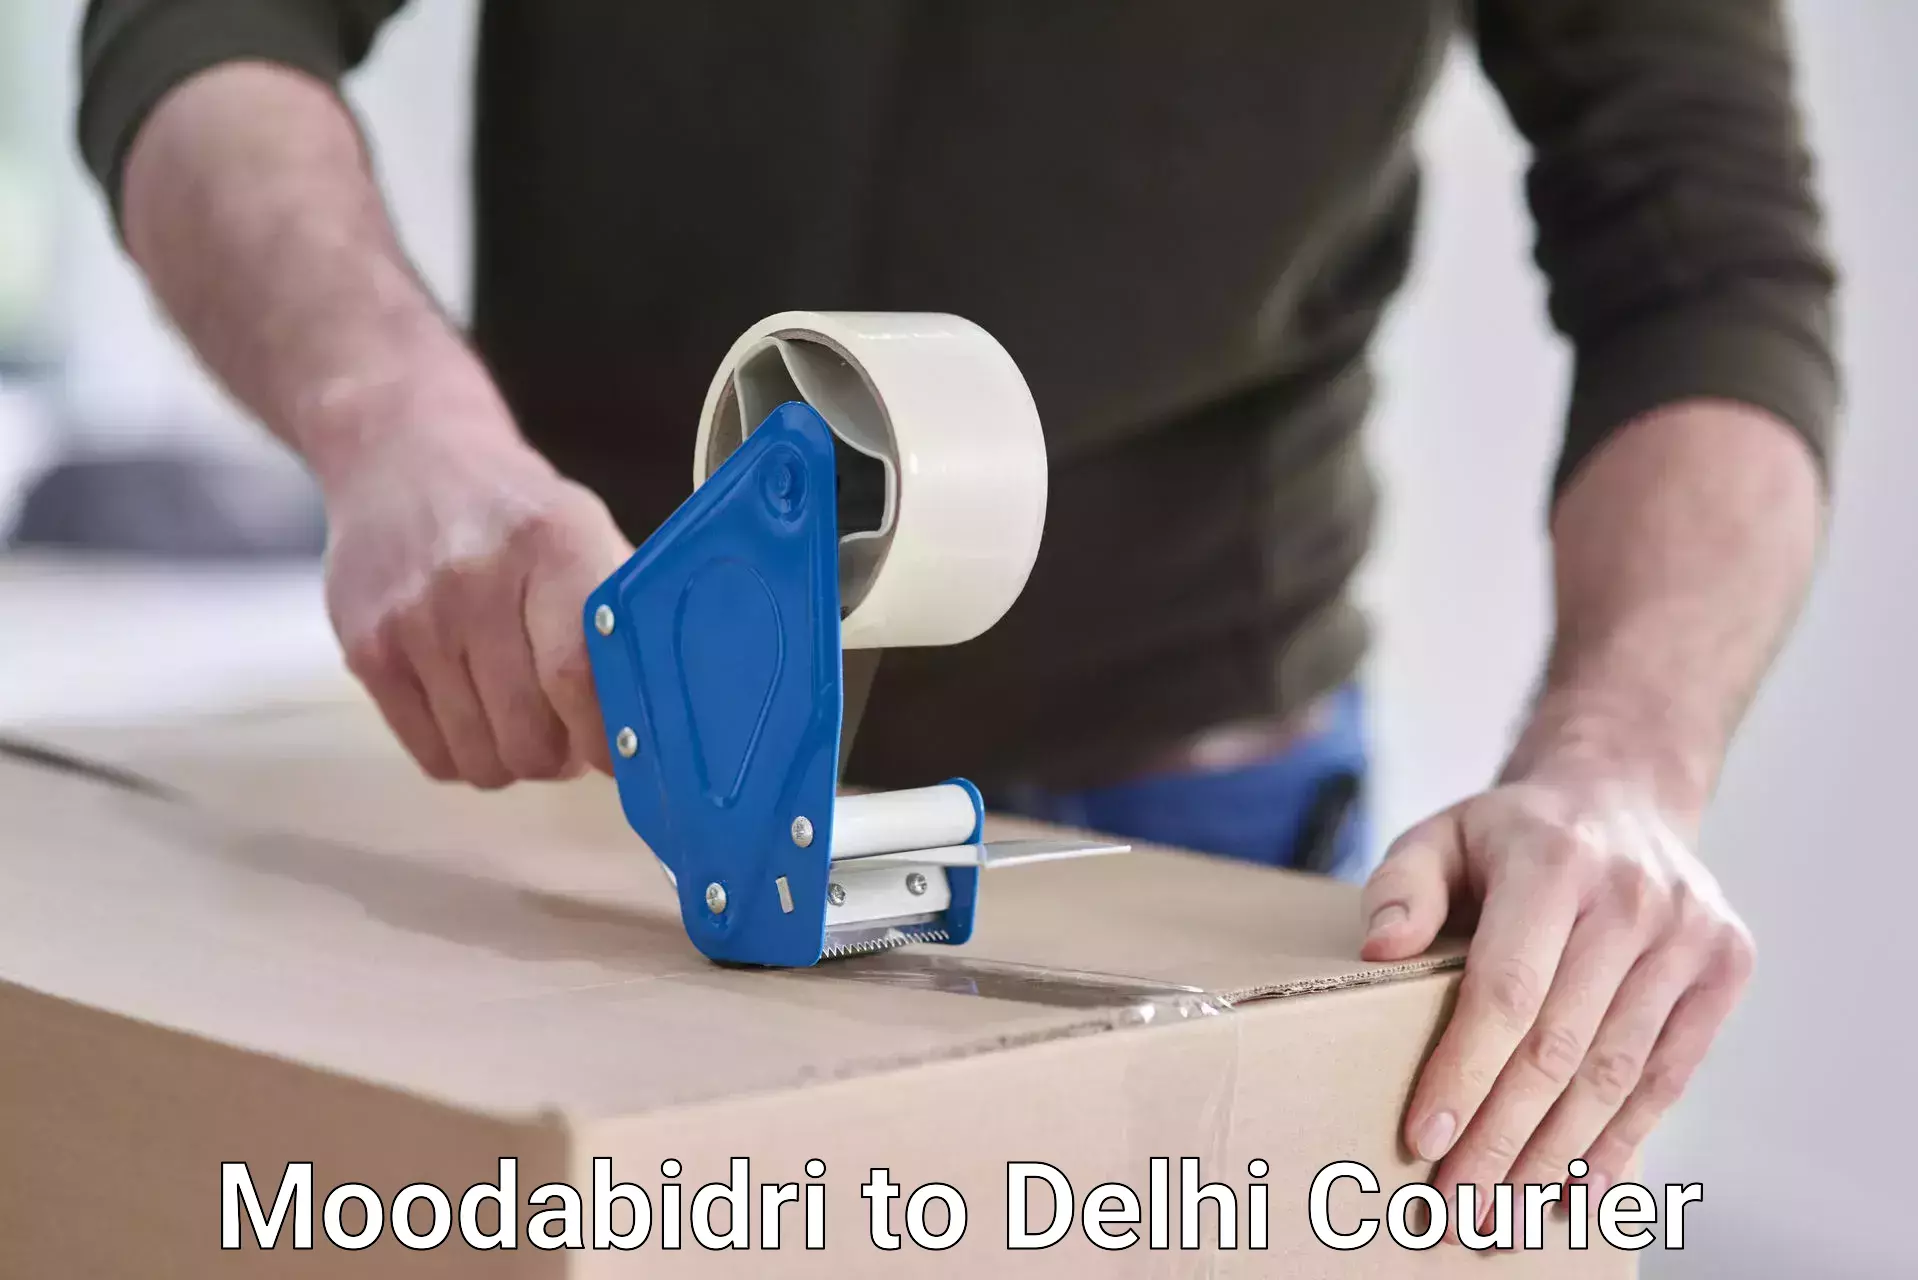 Full-service courier options Moodabidri to Delhi